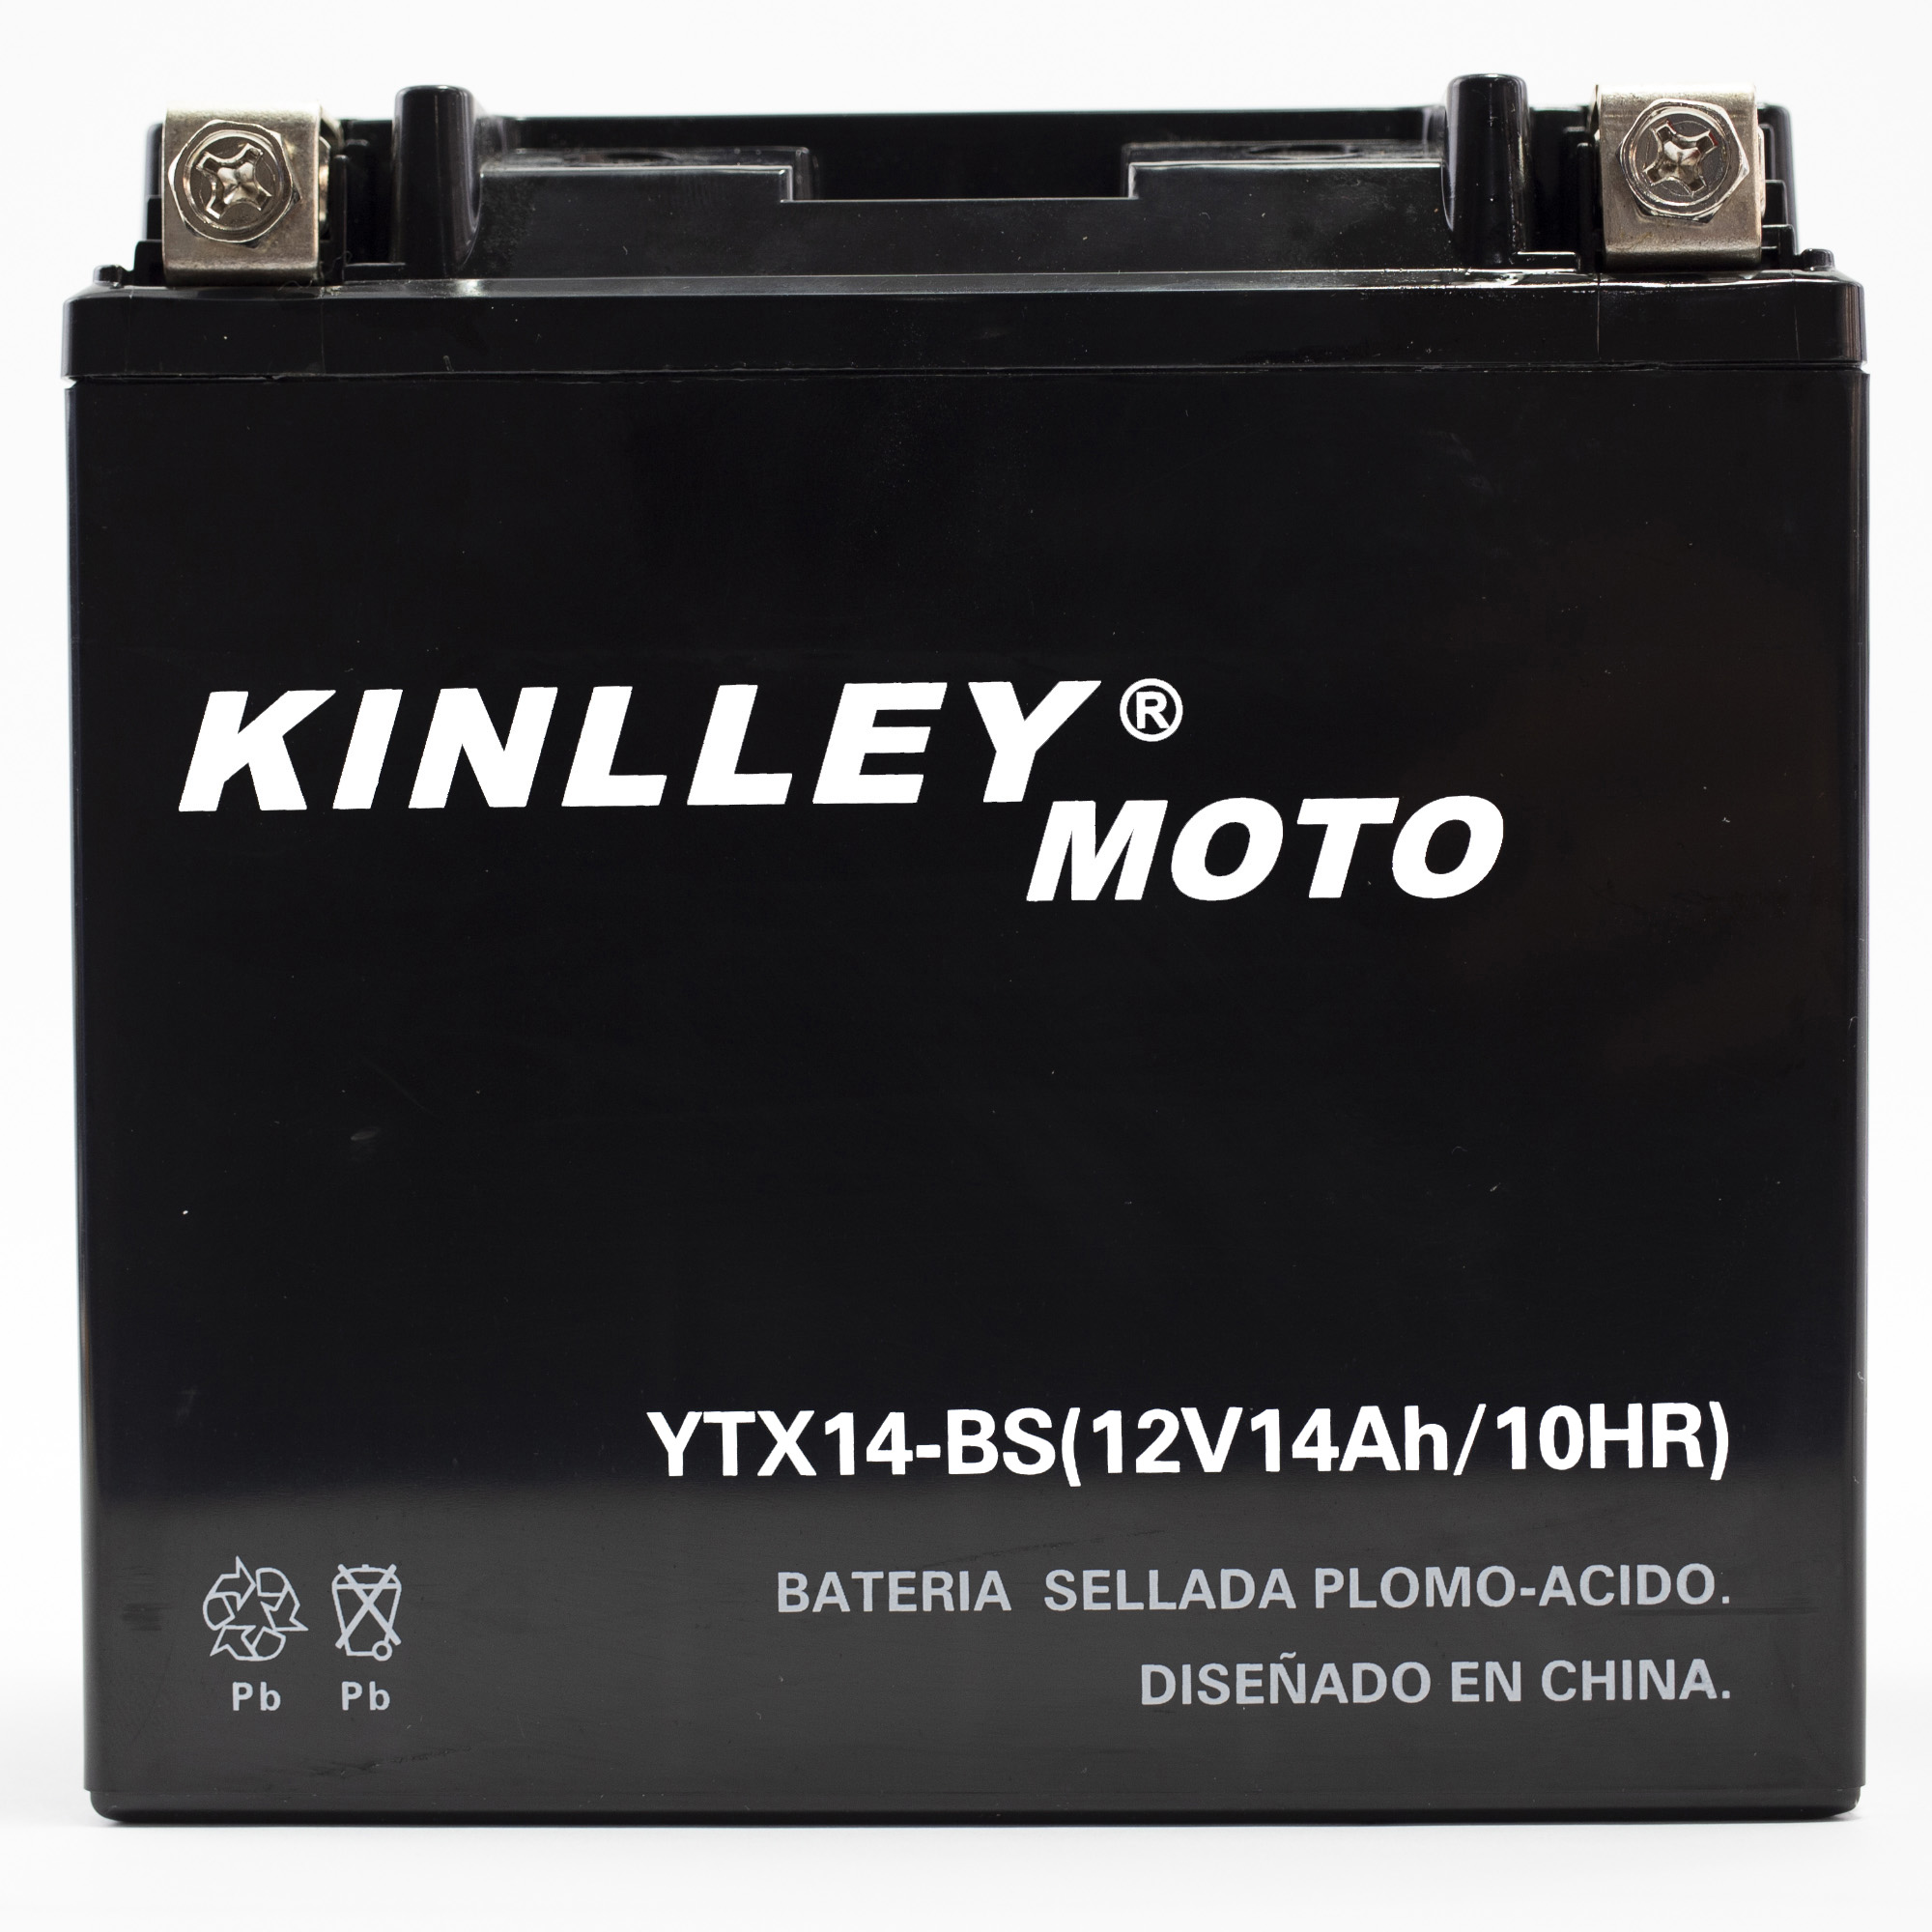 Bicimex Detalles Bateria para motocicleta YTX9-BS Kinlley